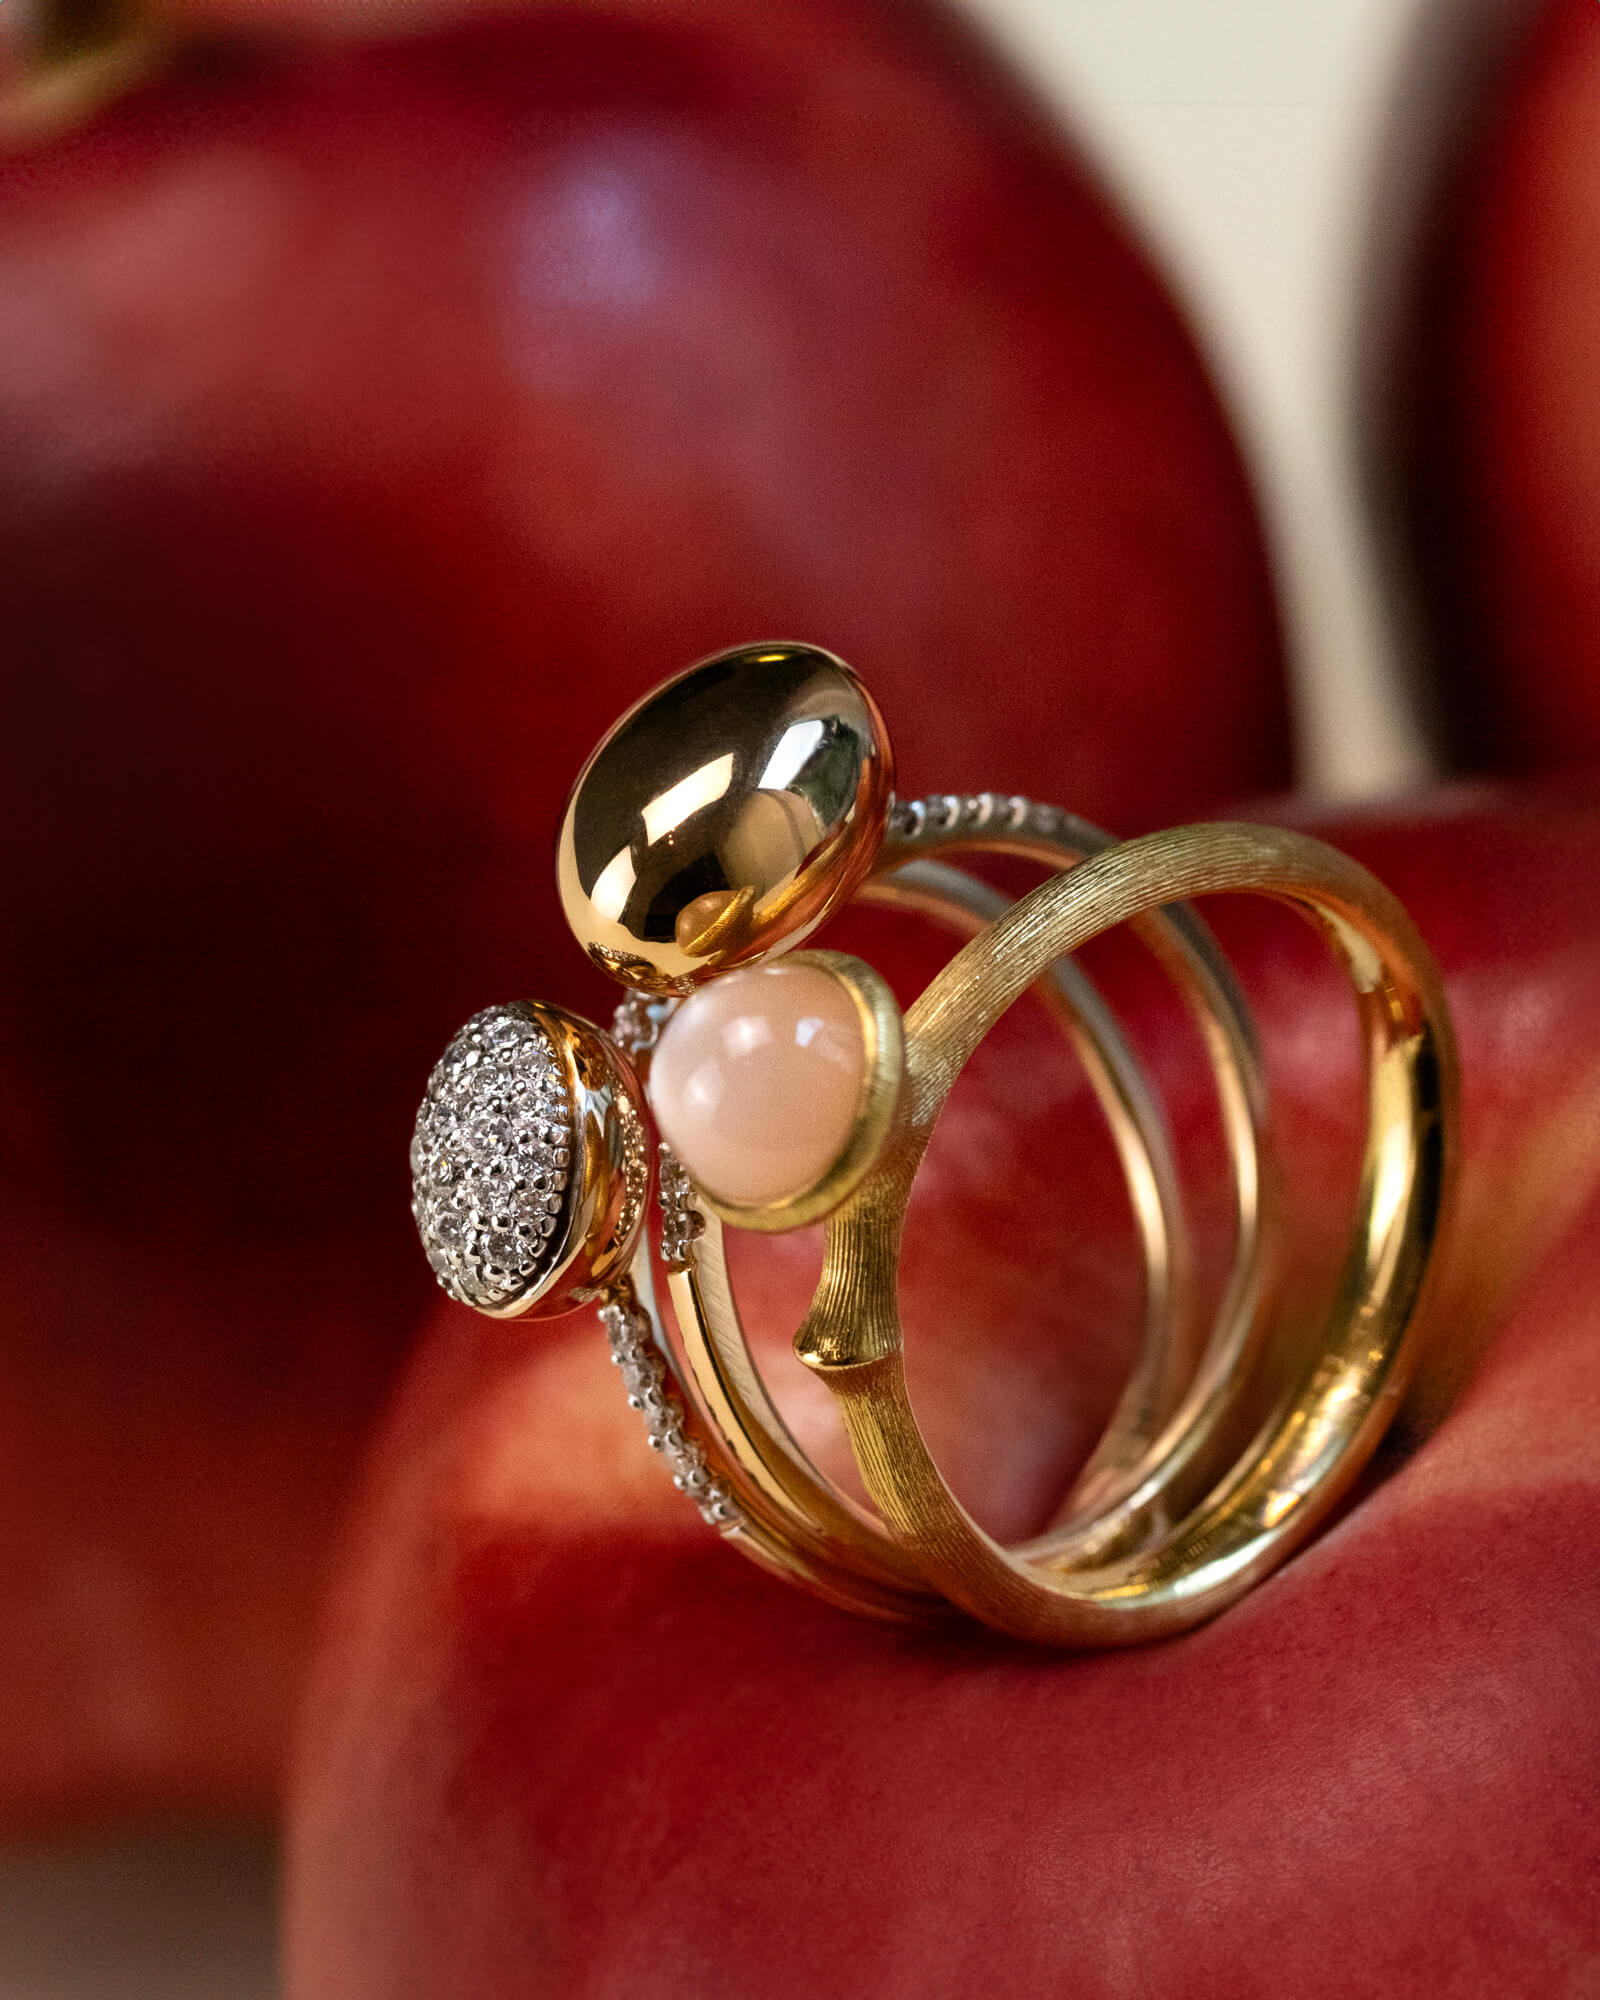 Peach Fuzz: Juwelier Badort Schmuckauswahl im Farbton PANTONE 13-1023